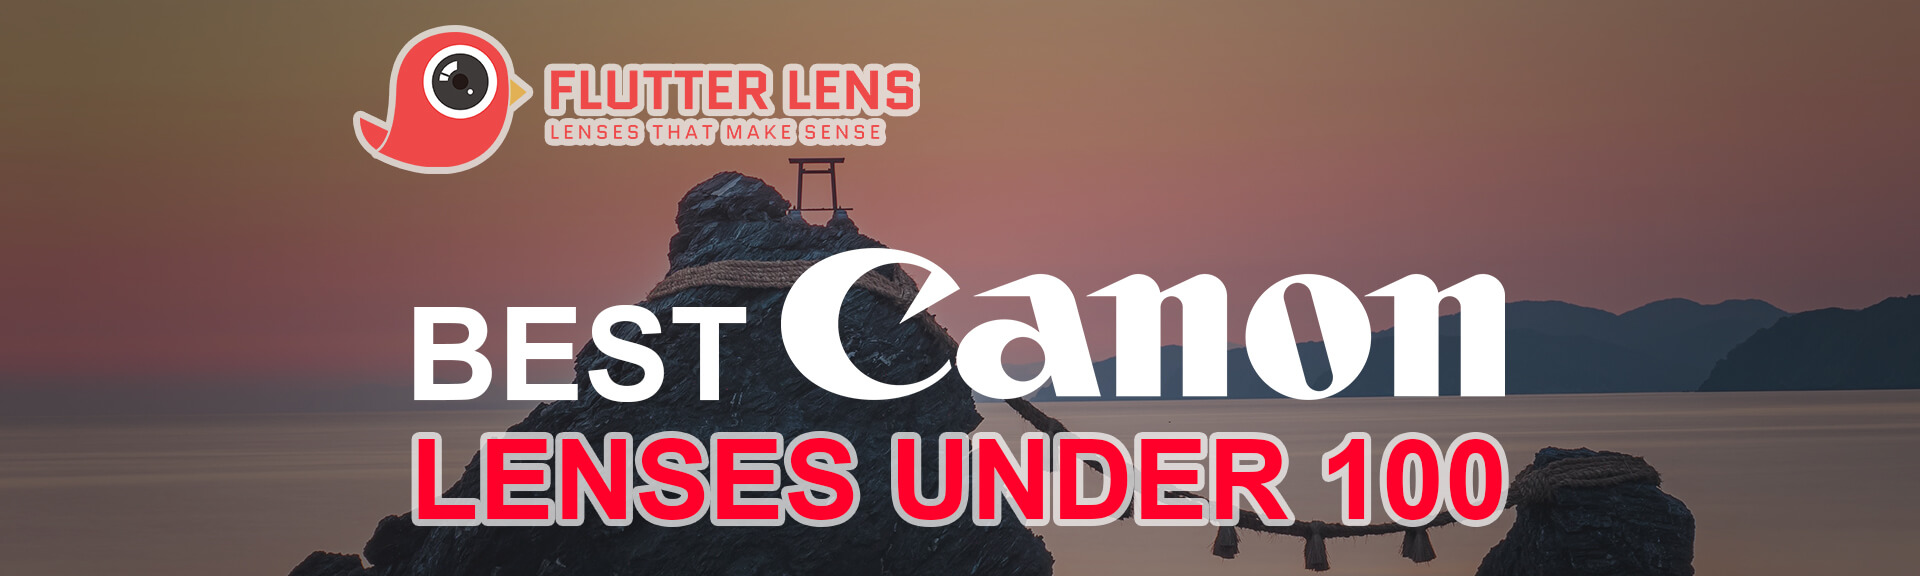 Best Canon Lenses Under 100